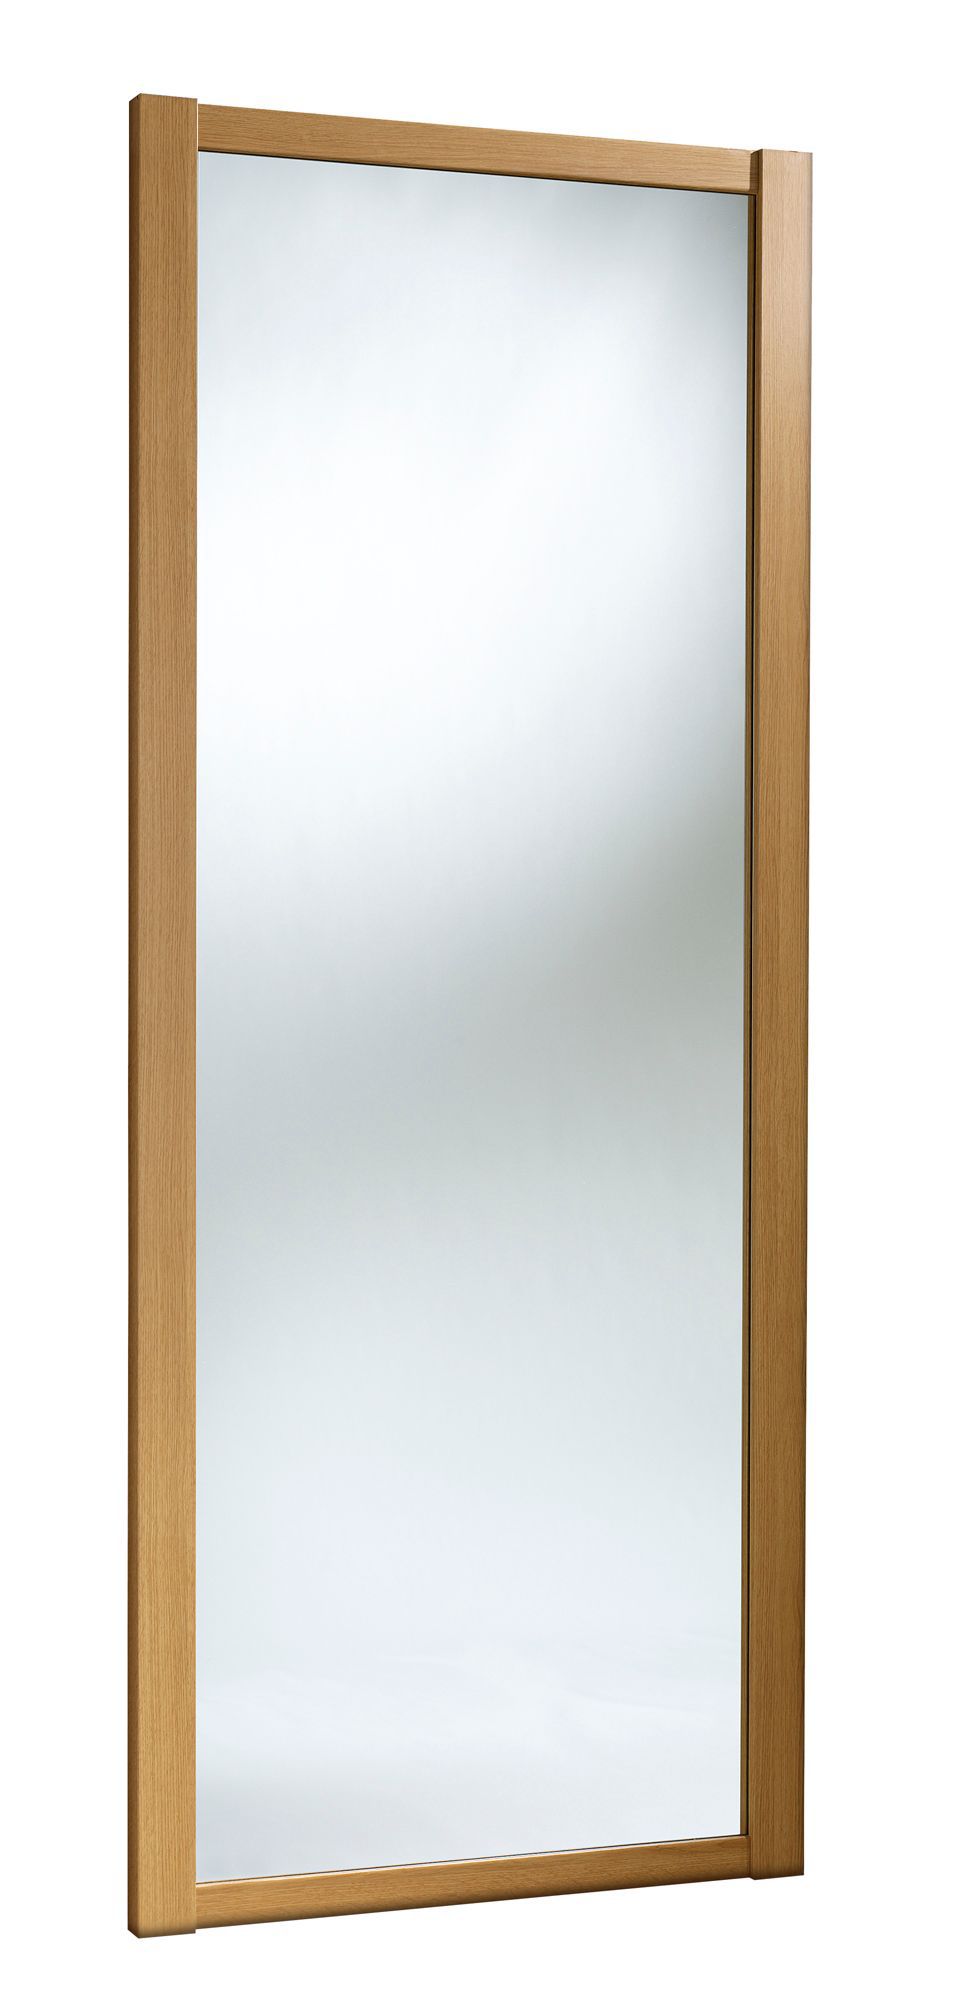 Spacepro Classic Shaker Oak effect Mirrored Sliding wardrobe door (H) 2220mm x (W) 914mm